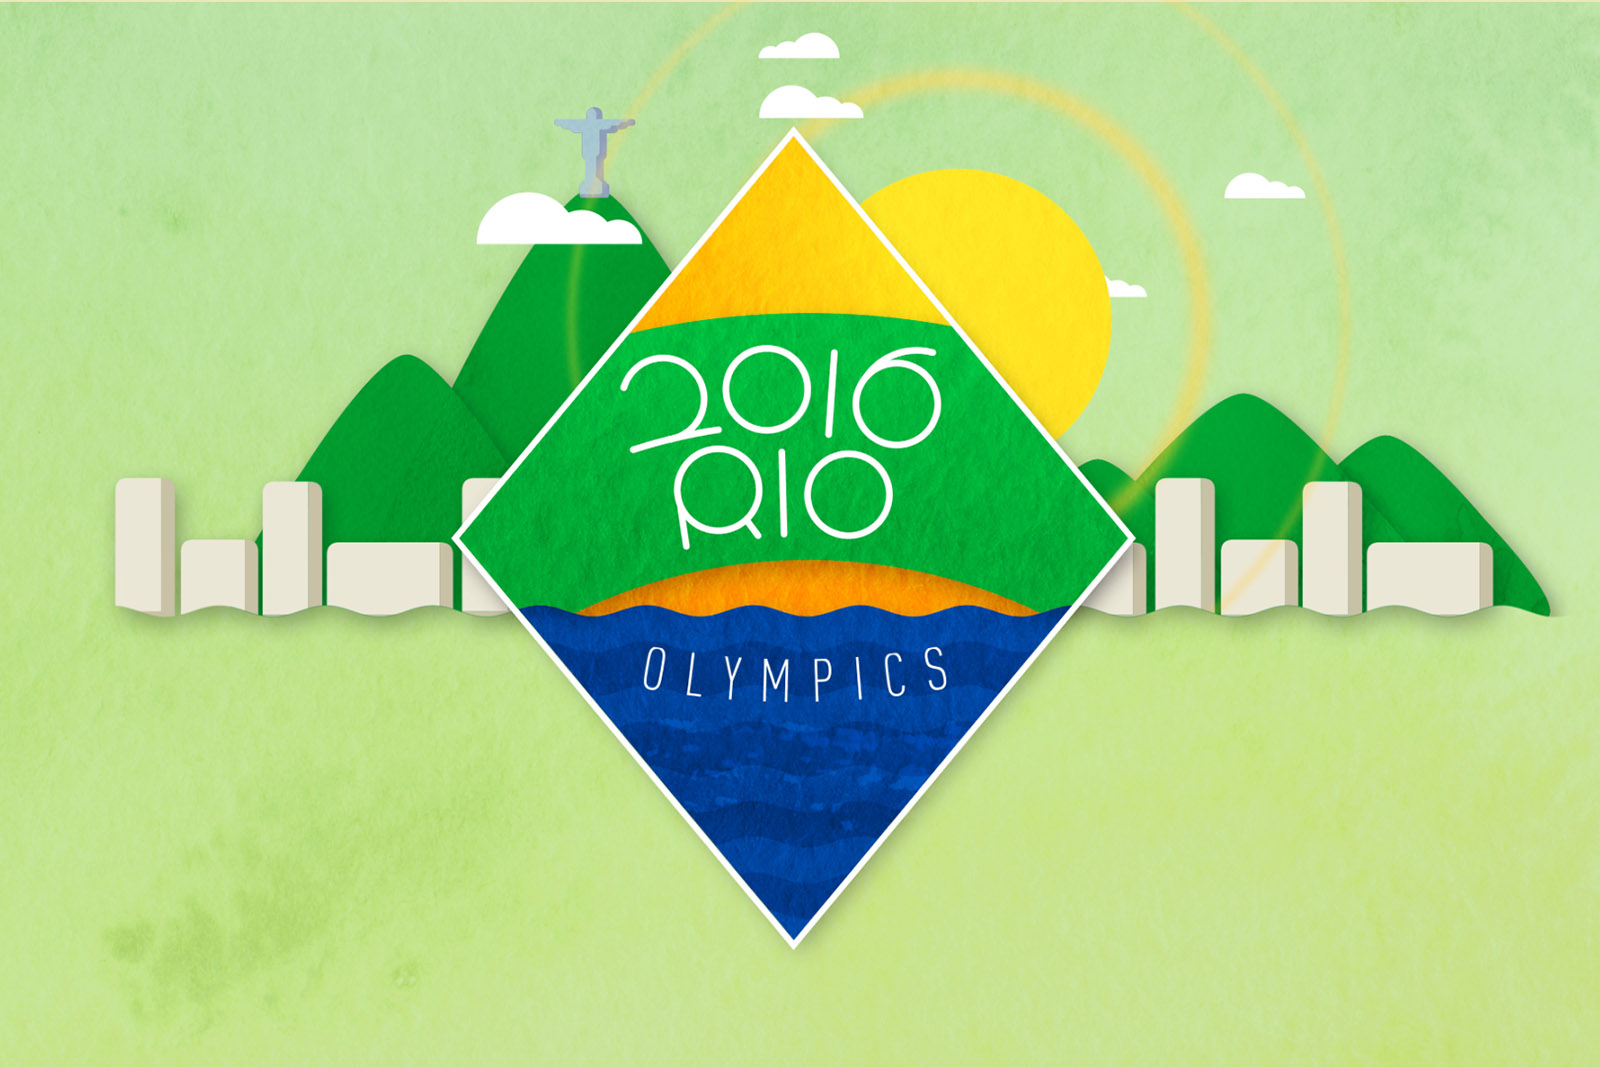 The 2016 Summer Olympics in Rio de Janeiro